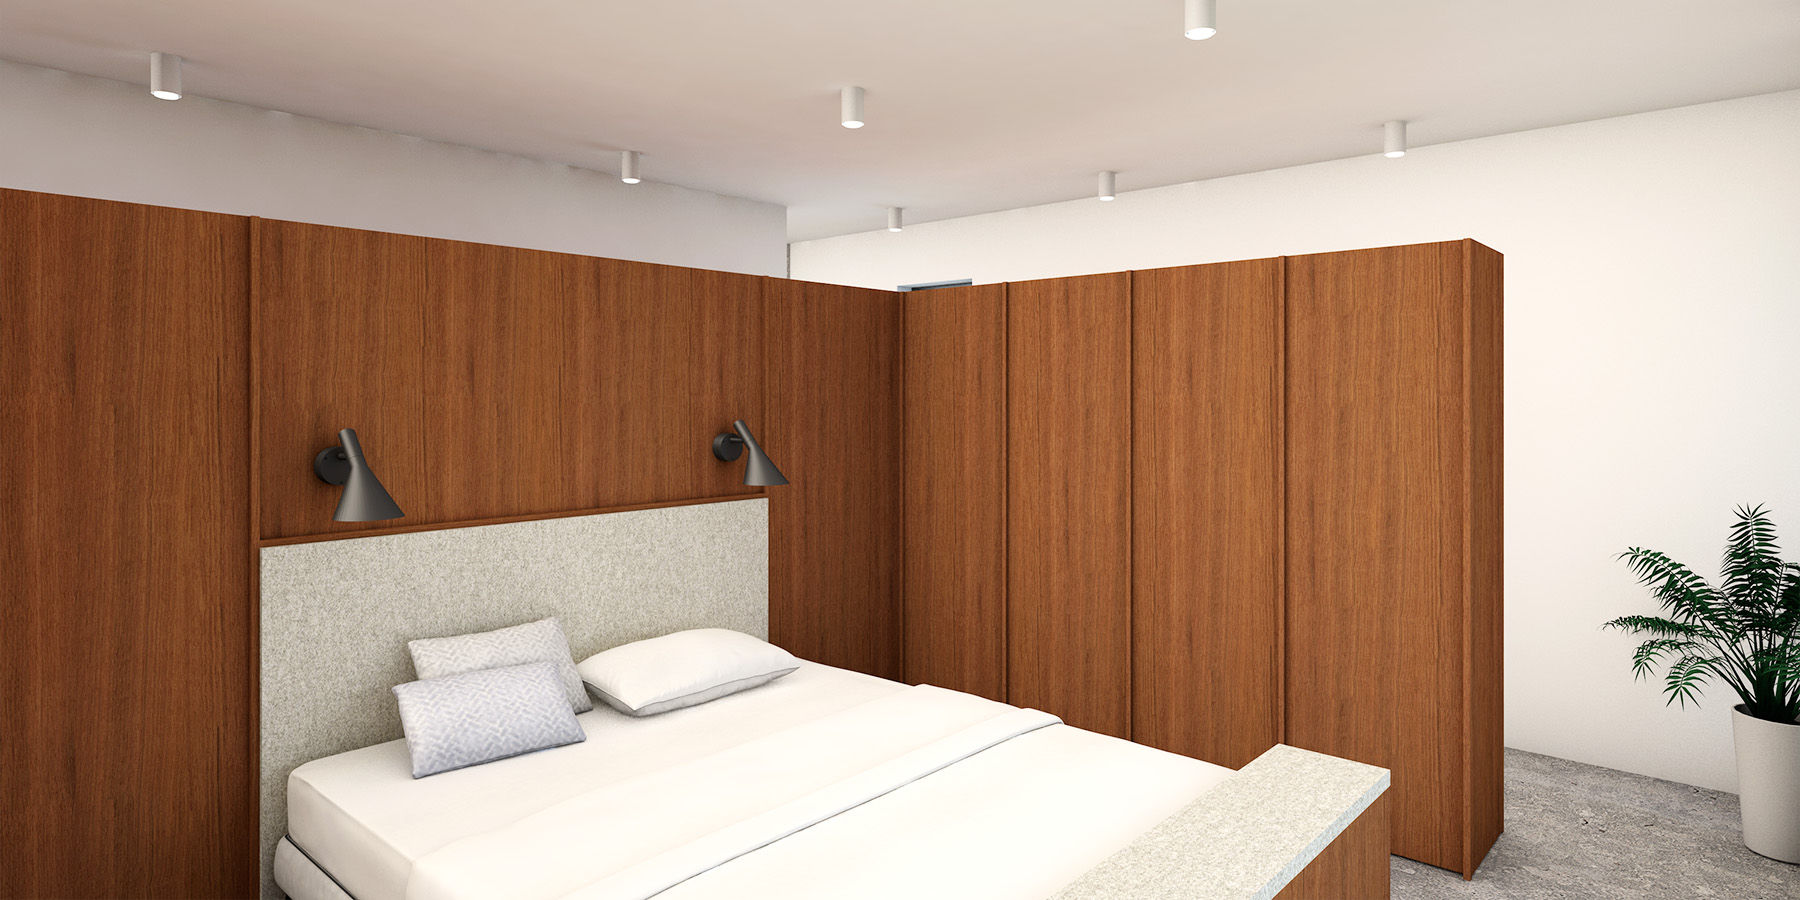 slaapkamer De Nieuwe Context maatmeubilair,gezellig,warm,licht,open,transparant,modern,hout